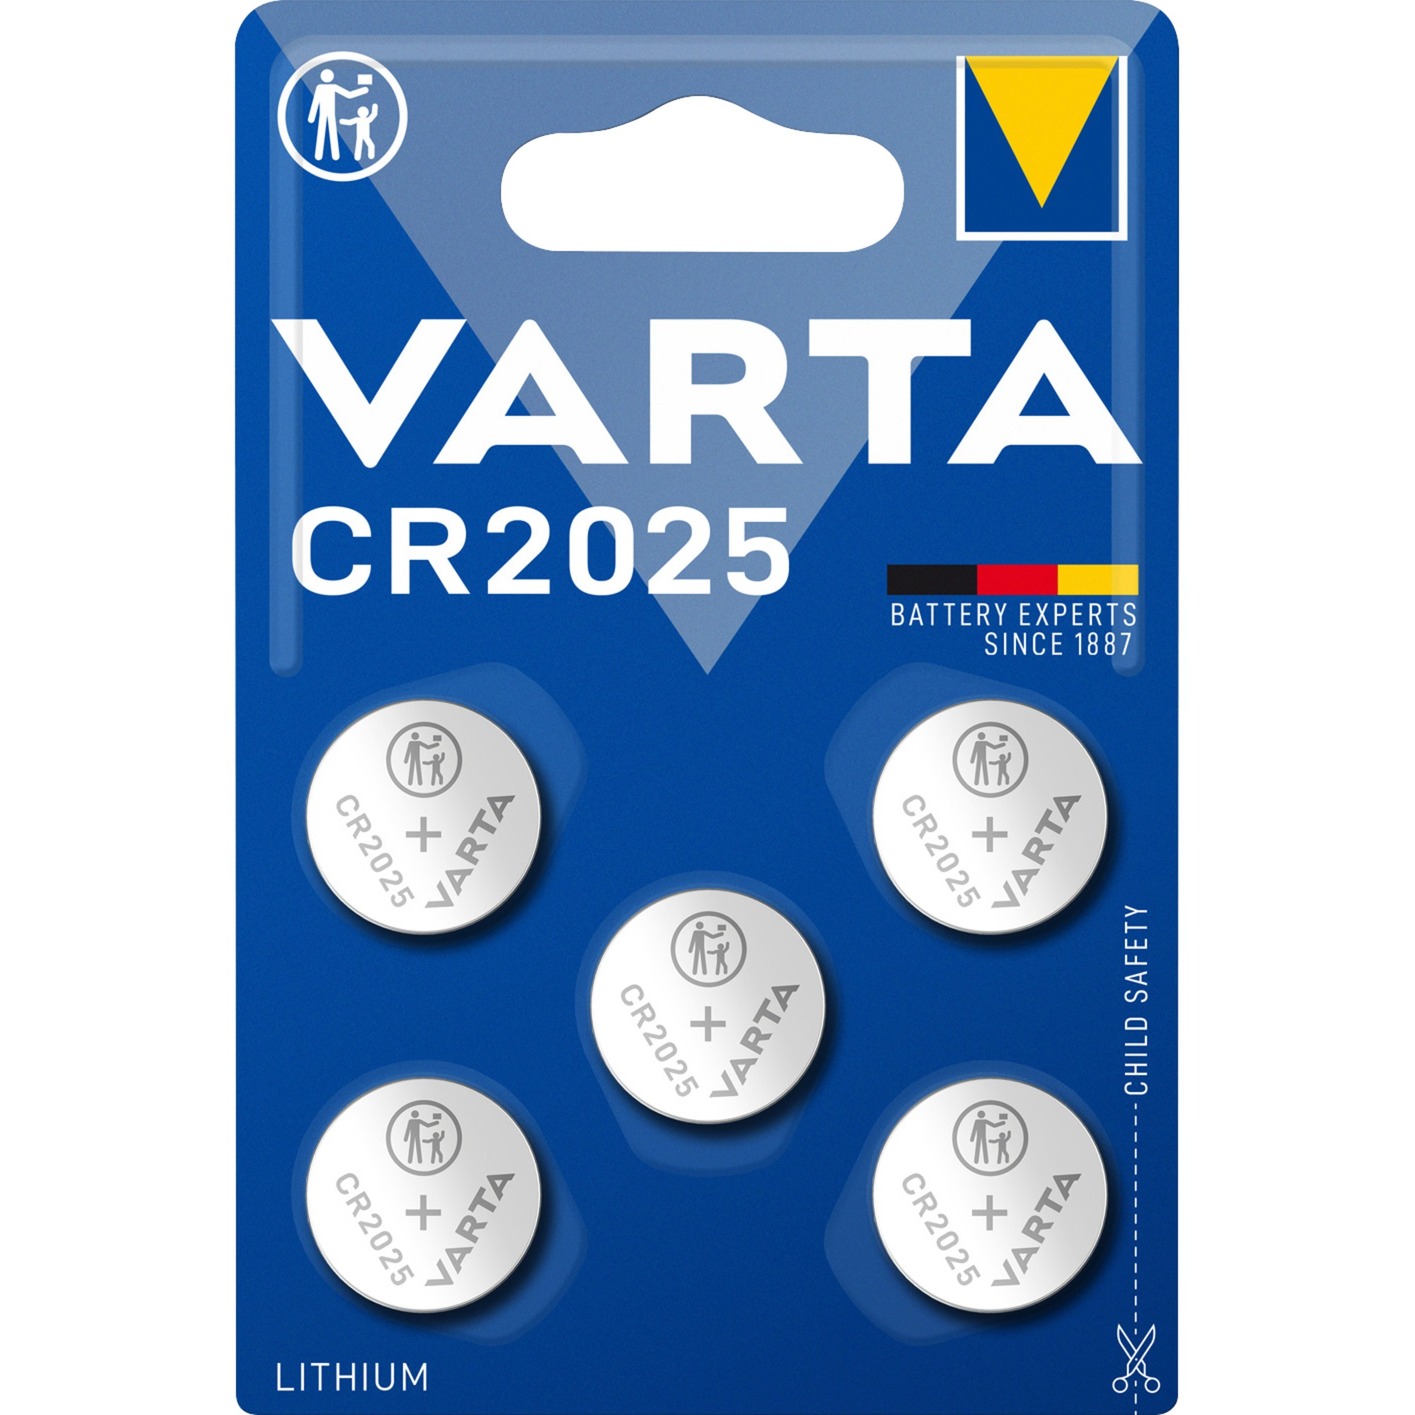 LITHIUM Coin CR2025, Batterie von Varta